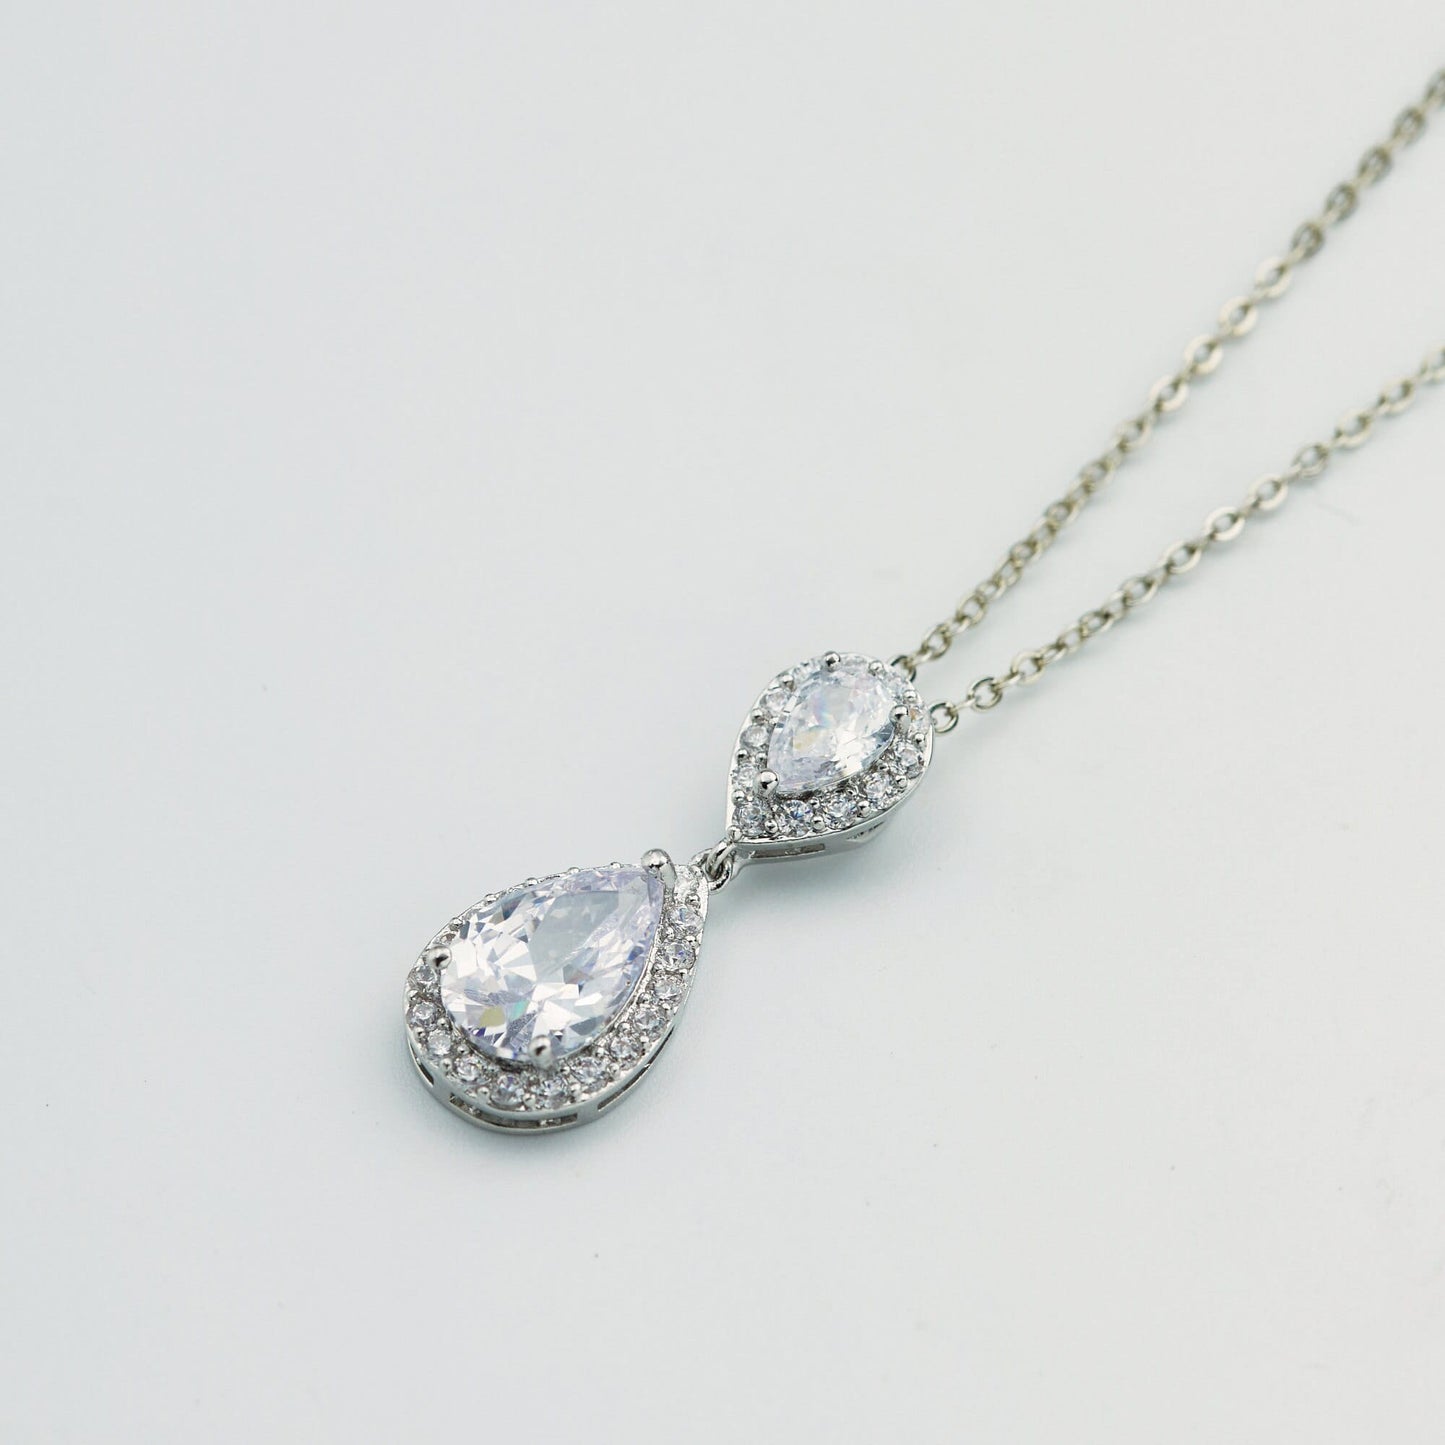 Silver Tear Drop Bridal Jewellery Set Wedding Earring Necklace Bracelet.